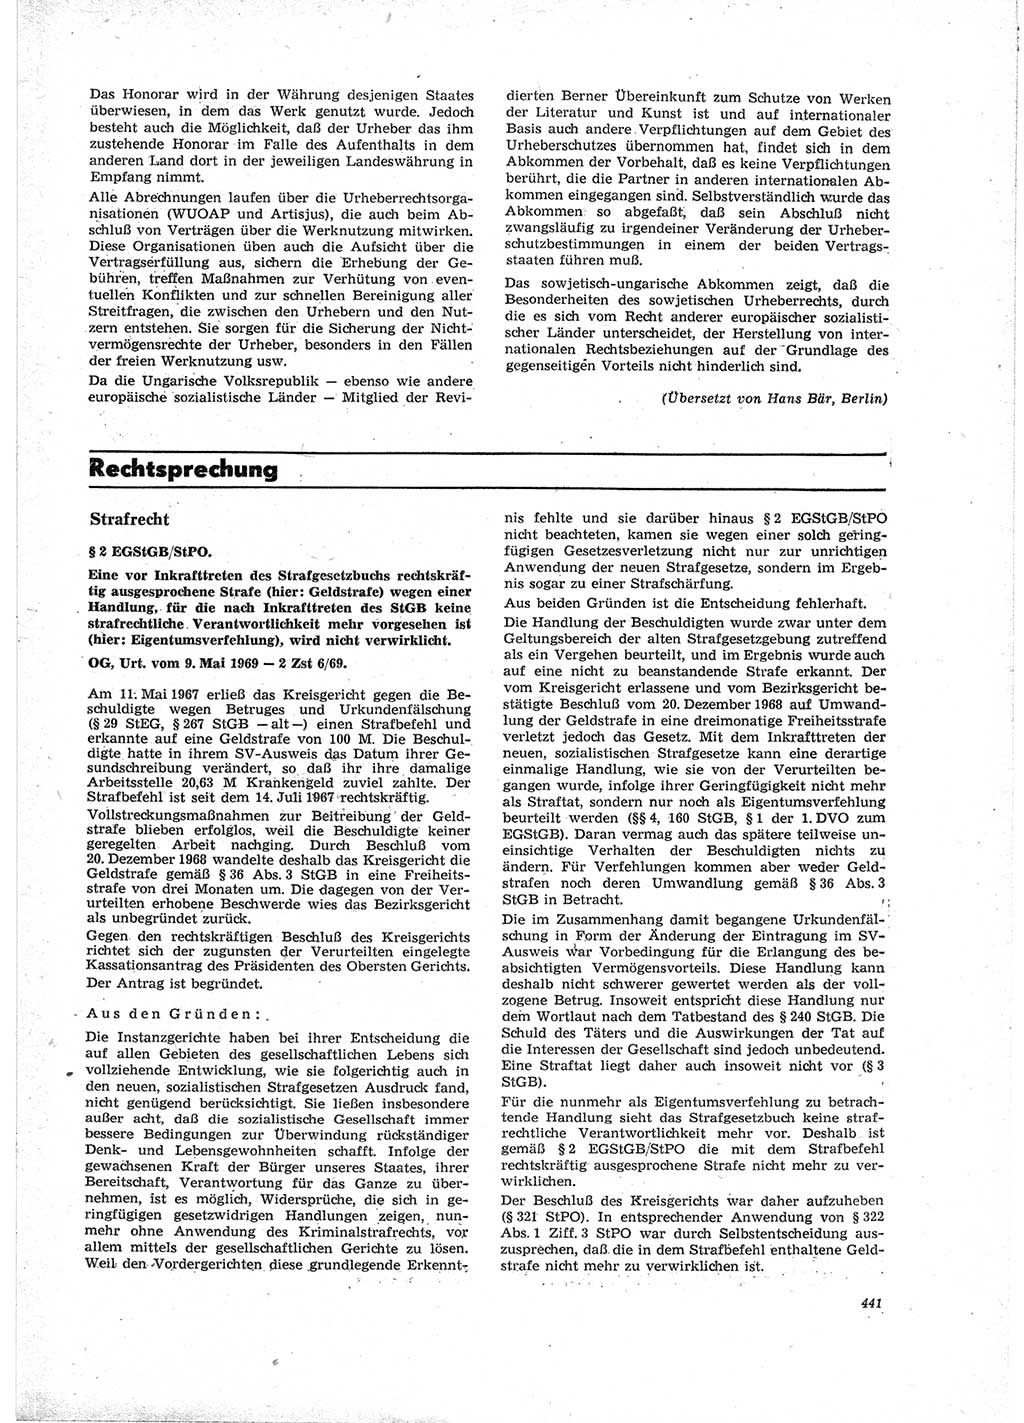 Neue Justiz (NJ), Zeitschrift für Recht und Rechtswissenschaft [Deutsche Demokratische Republik (DDR)], 23. Jahrgang 1969, Seite 441 (NJ DDR 1969, S. 441)